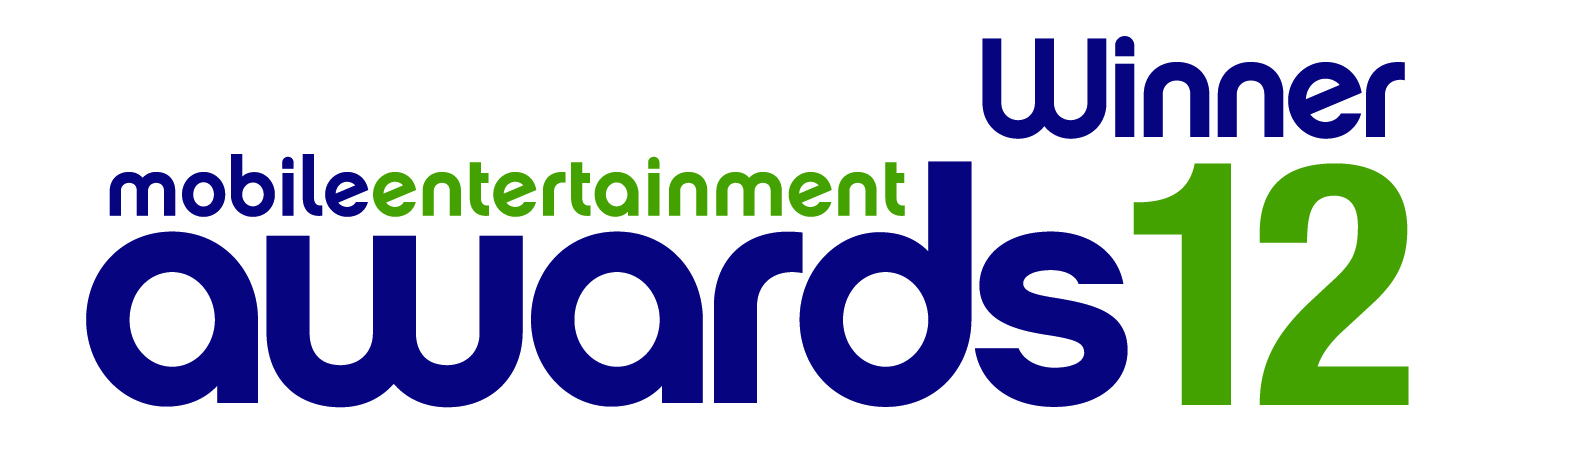 ME awards 2012 winner logo